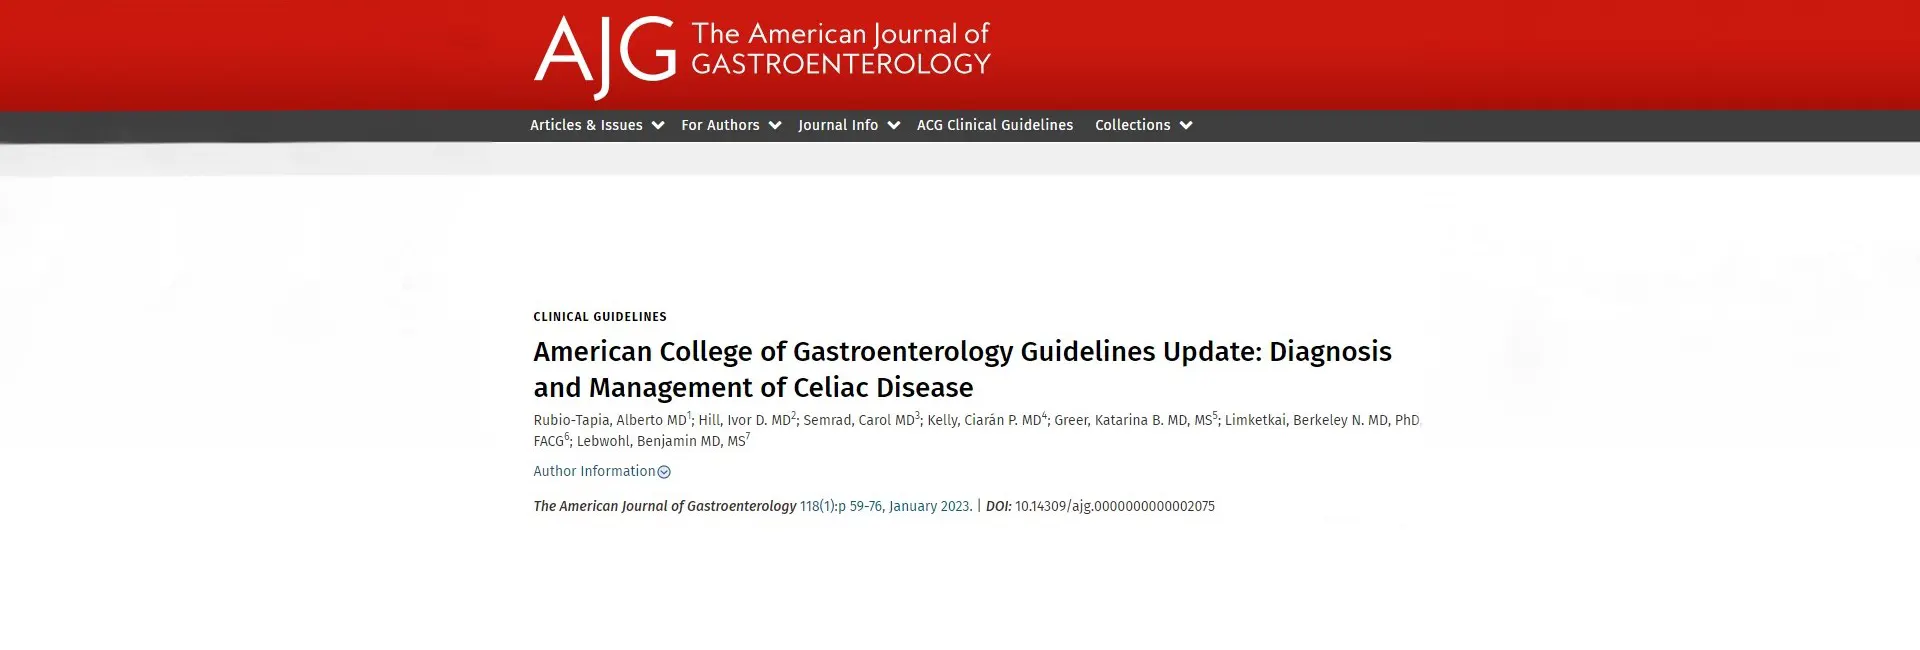 American College of Gastroenterology - Nueva guía para el diagnóstico y manejo de la enfermedad celiaca 